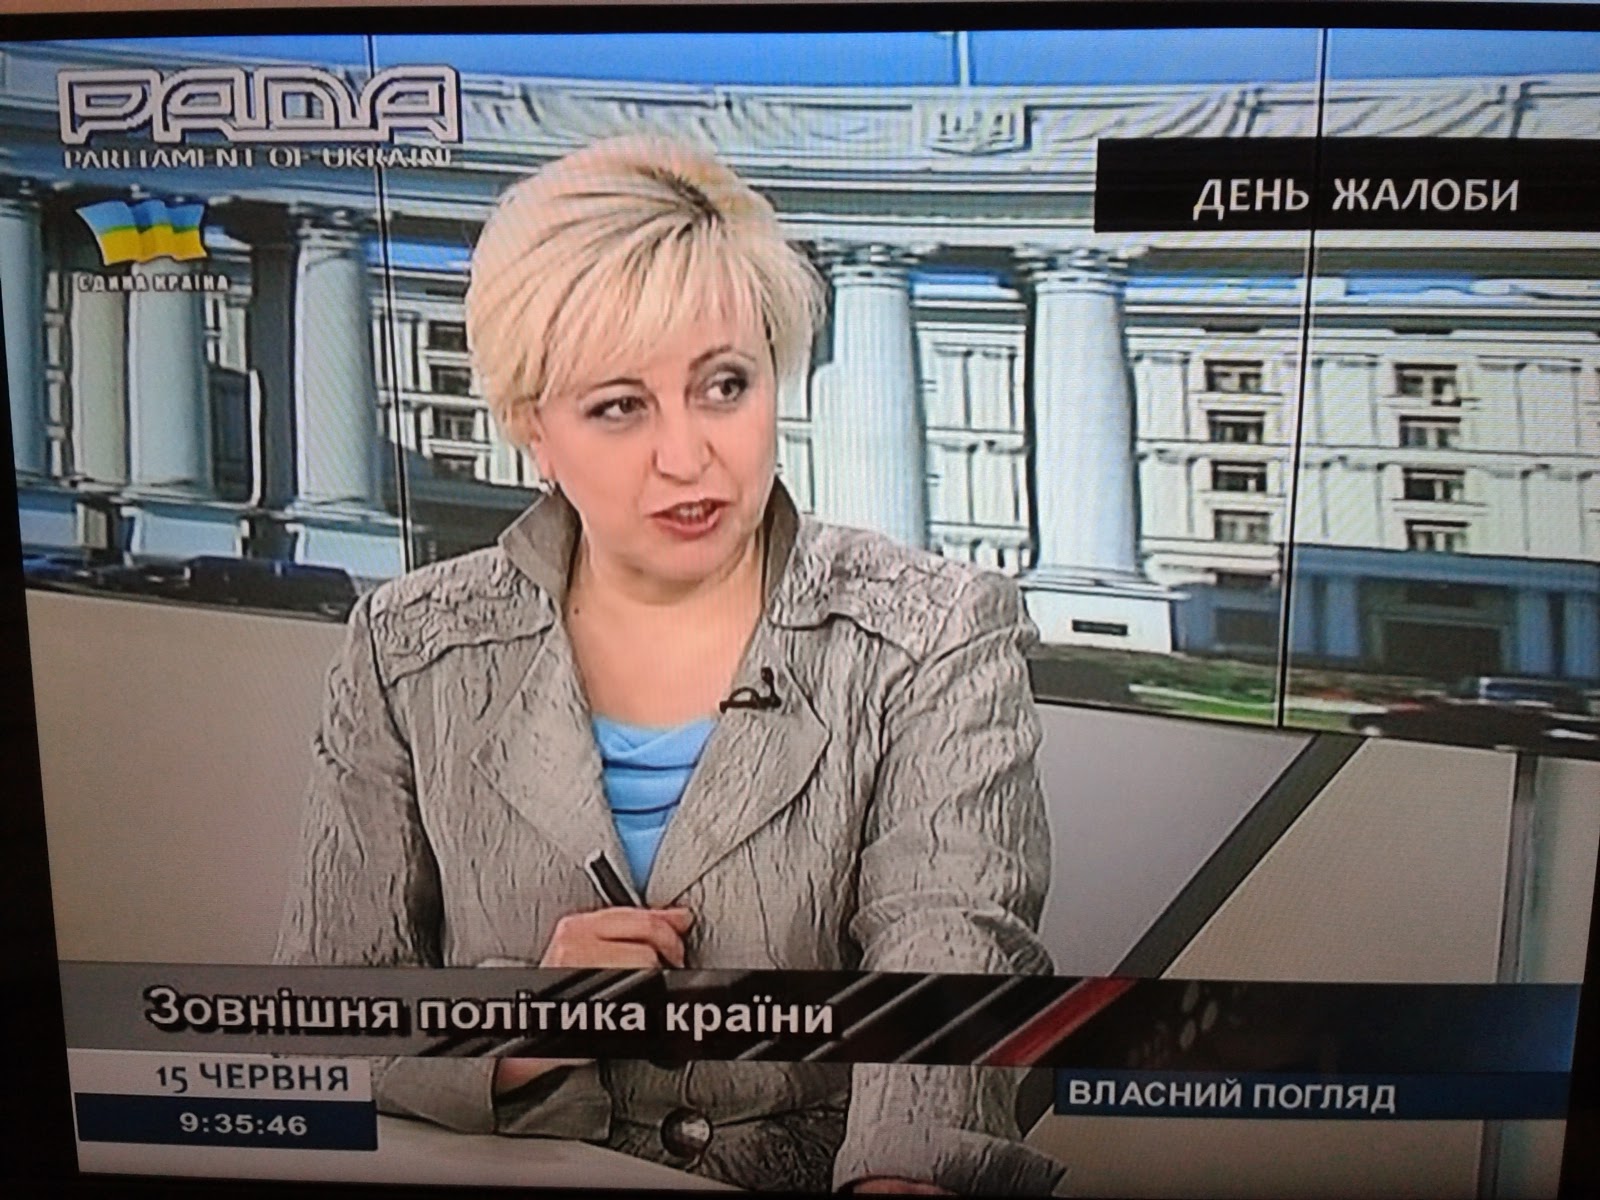 Телеканал рада Украина. Телеканал рада логотип. Телеканал рада ведущие. Новости телеканала рада. Канал рада украина